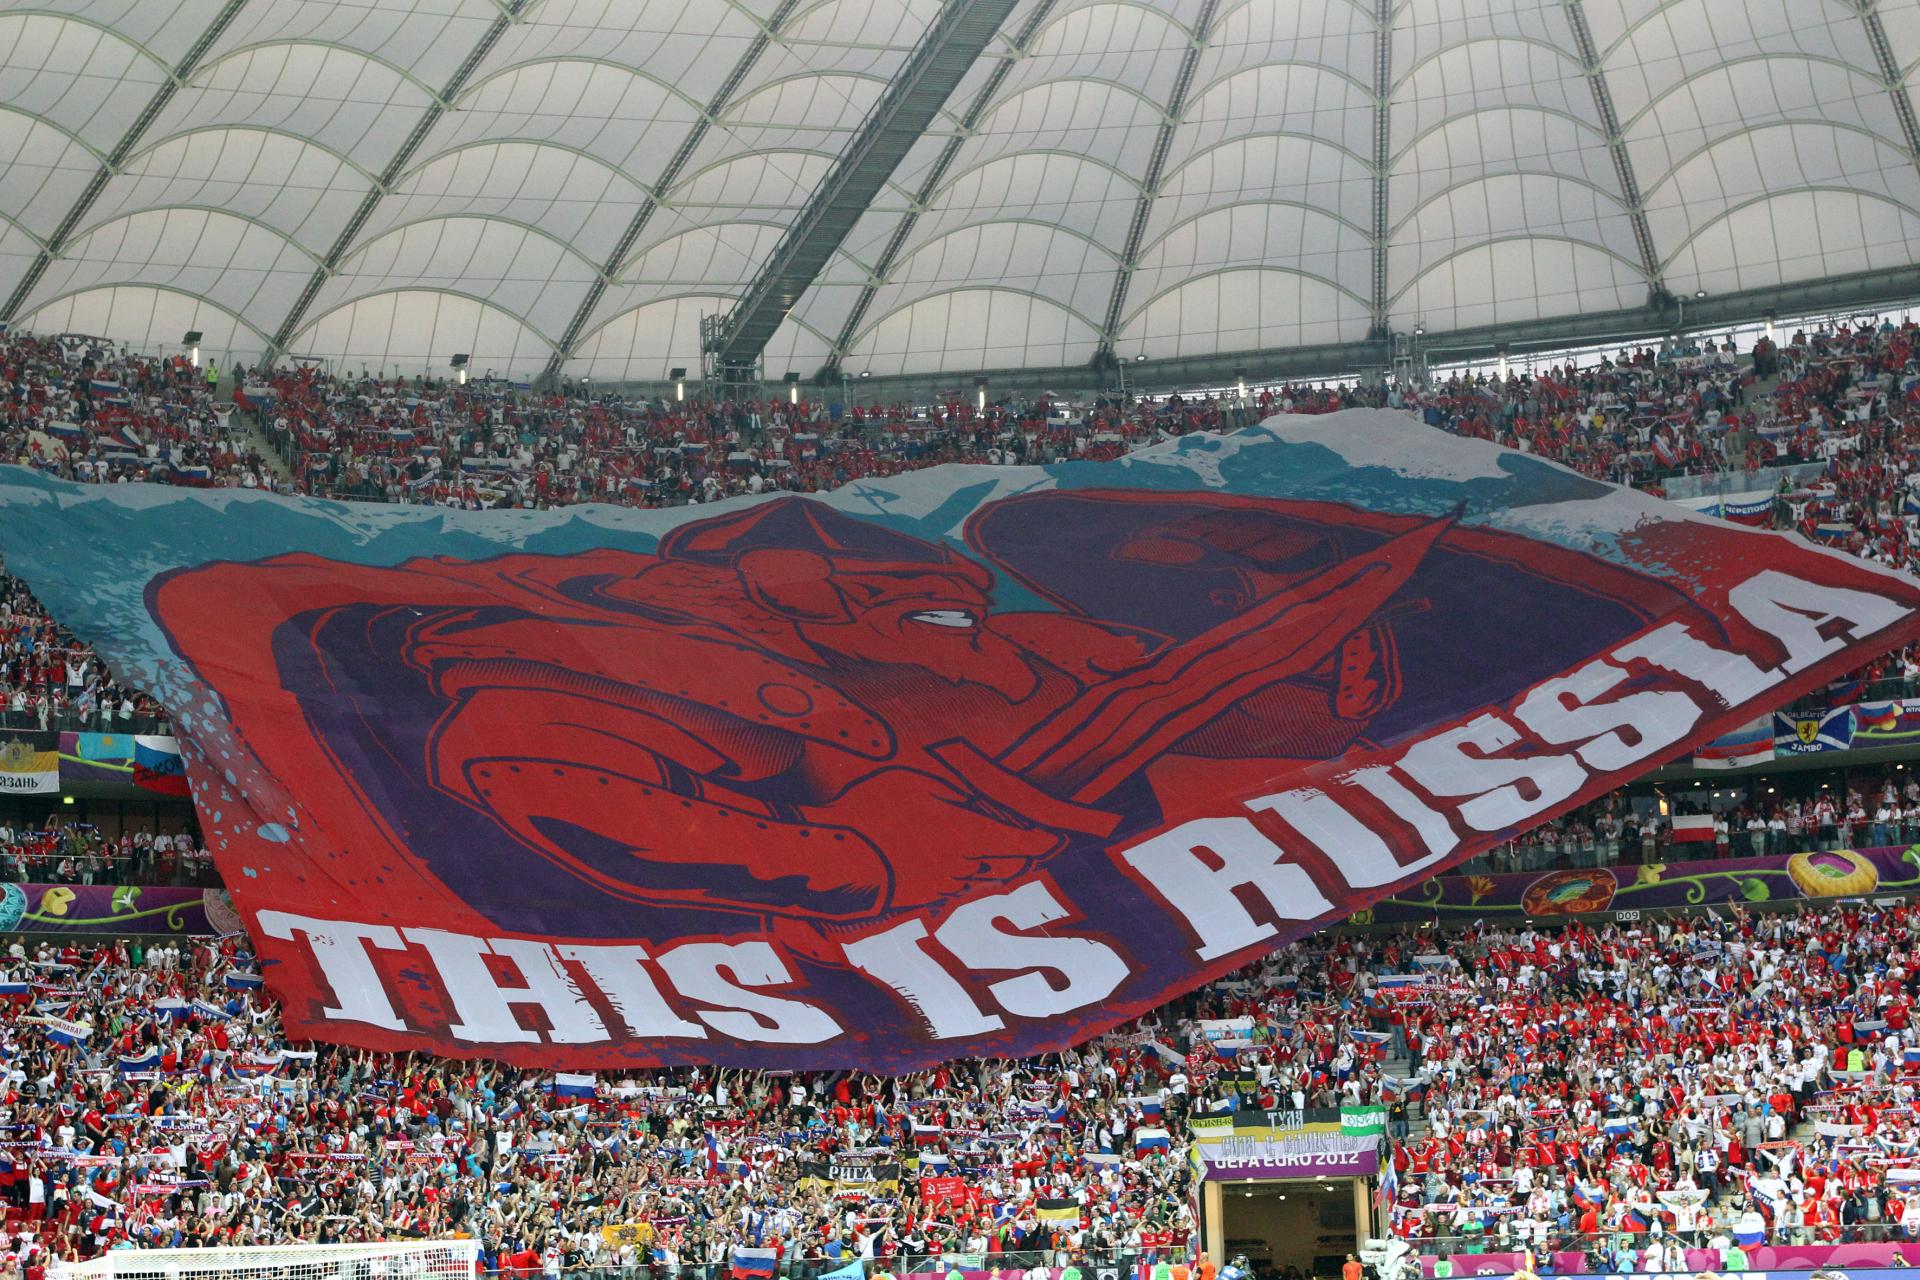 Rosyjscy kibice na meczu Polska - Rosja, Euro 2012. sektorowa flaga z napisem "This is Russia".